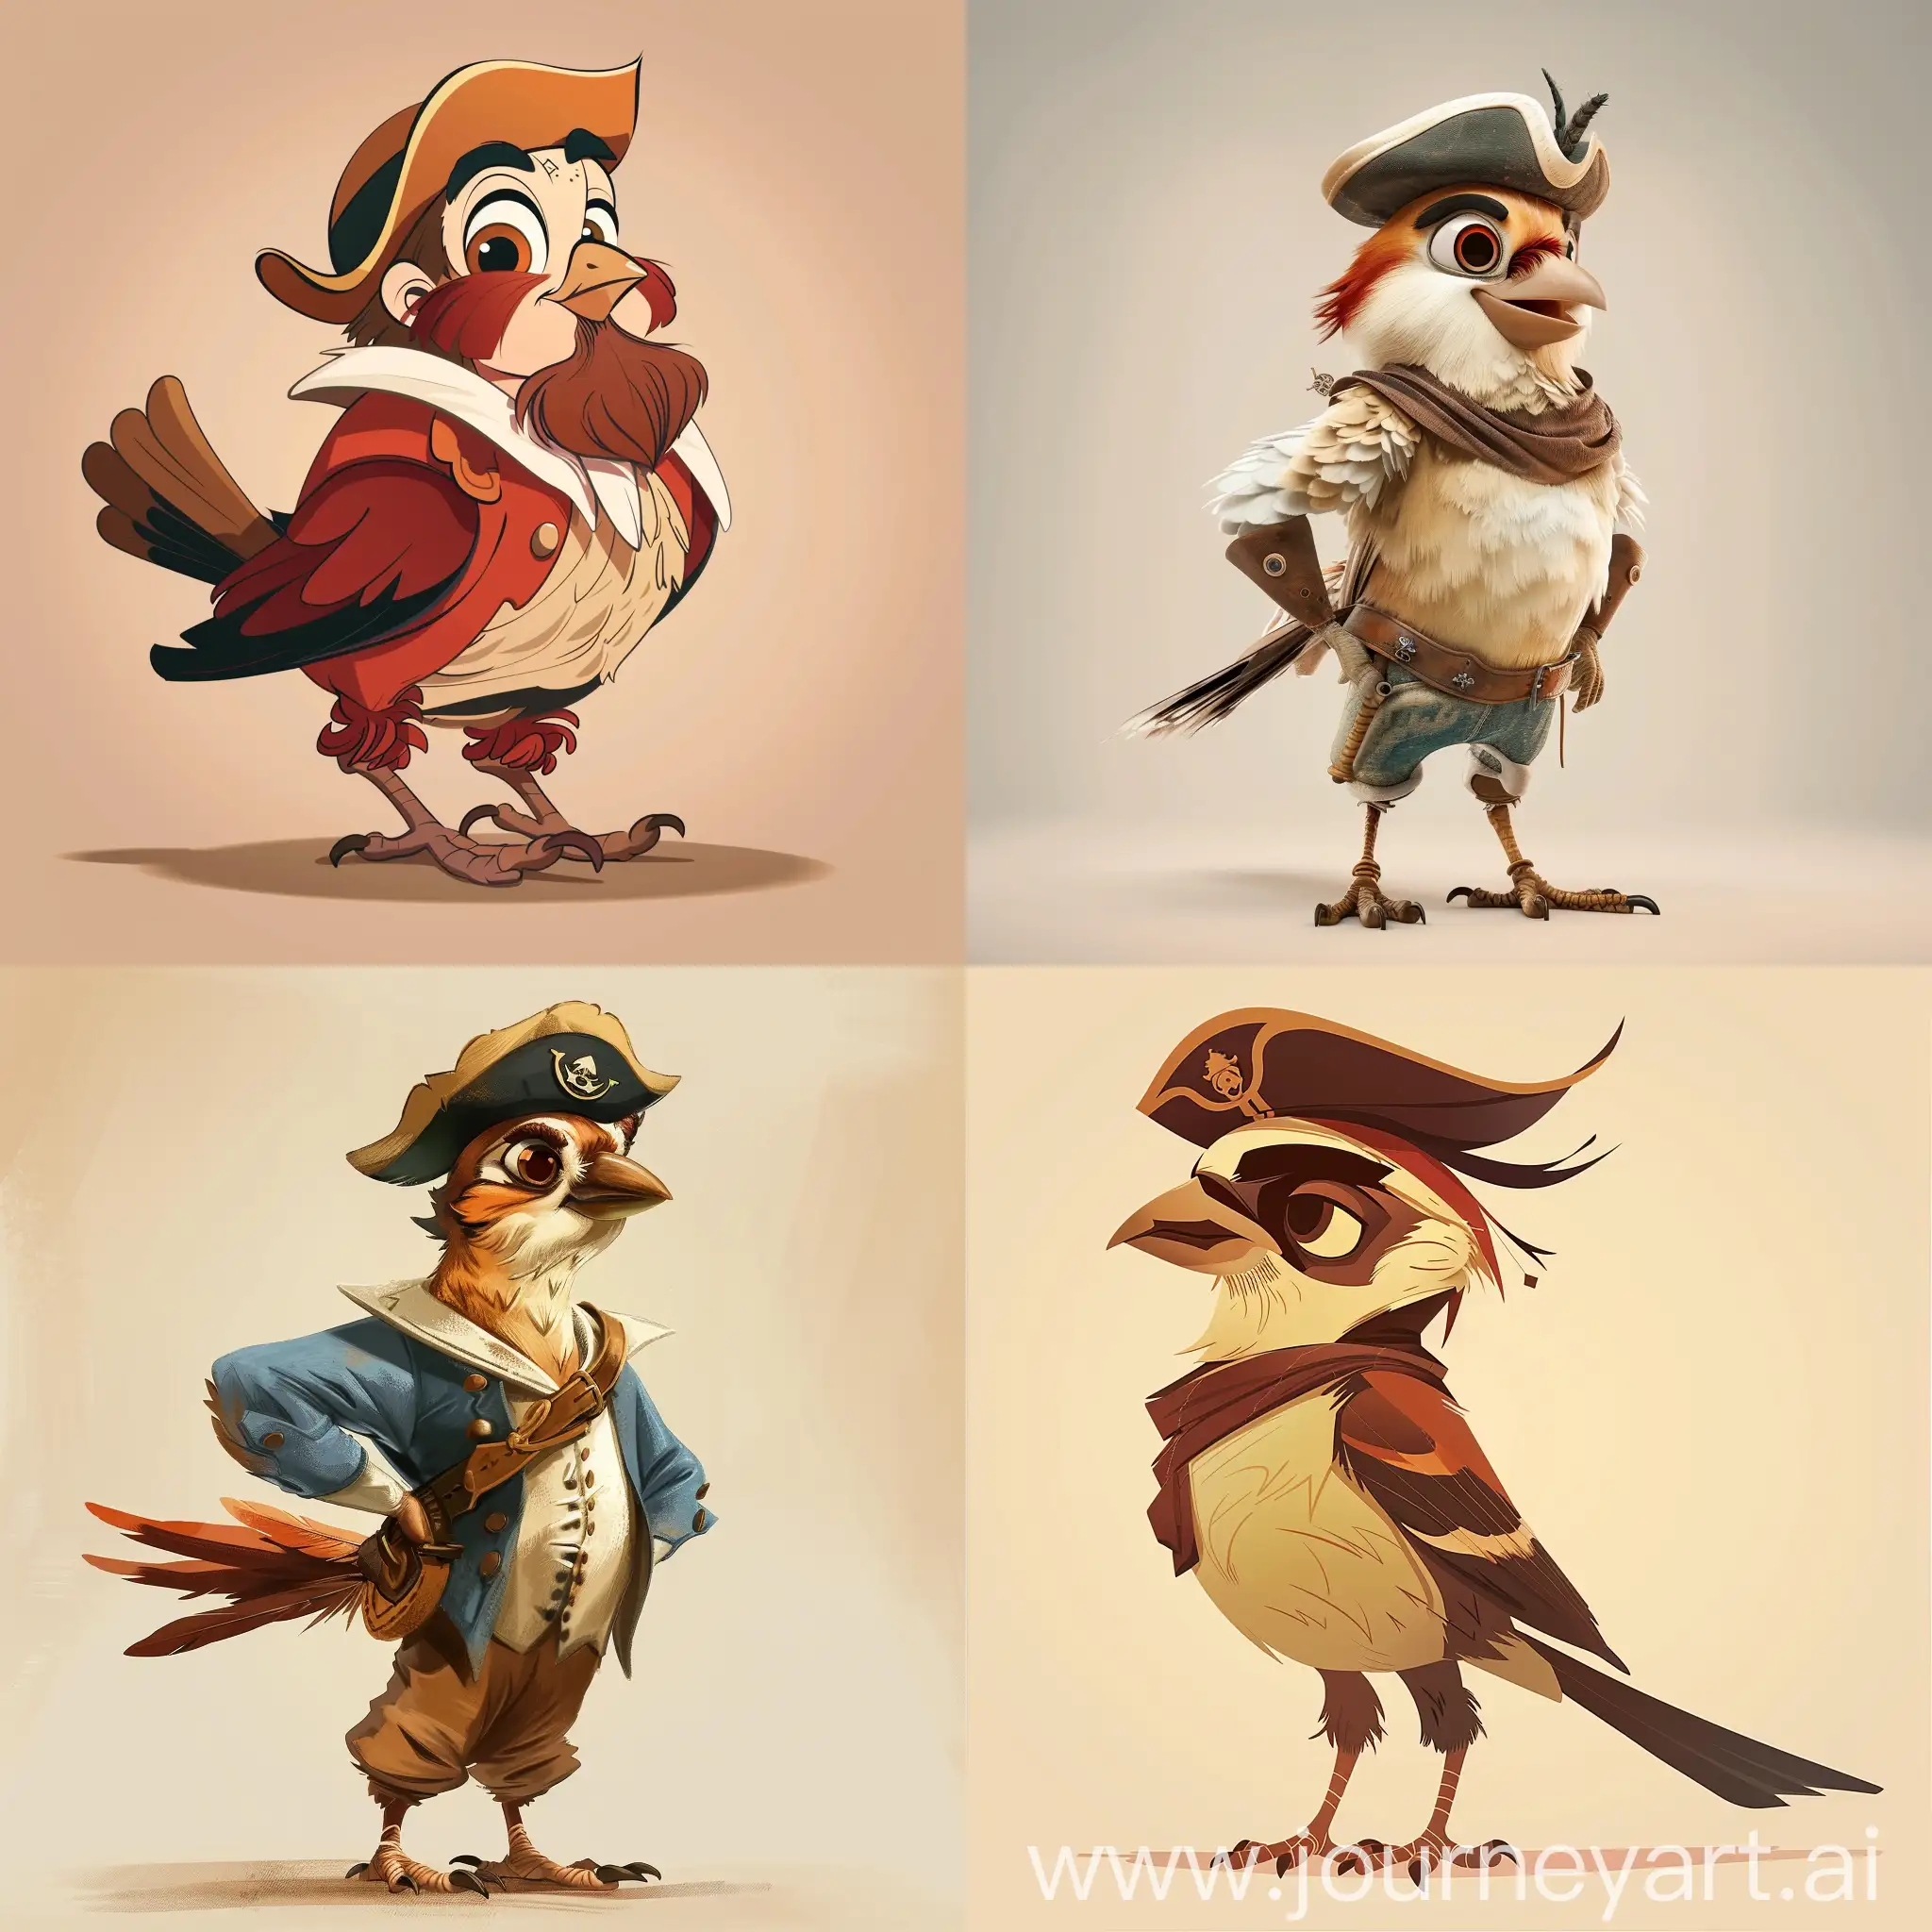 Sparrow-Man-Captain-in-Disney-Cartoon-Style